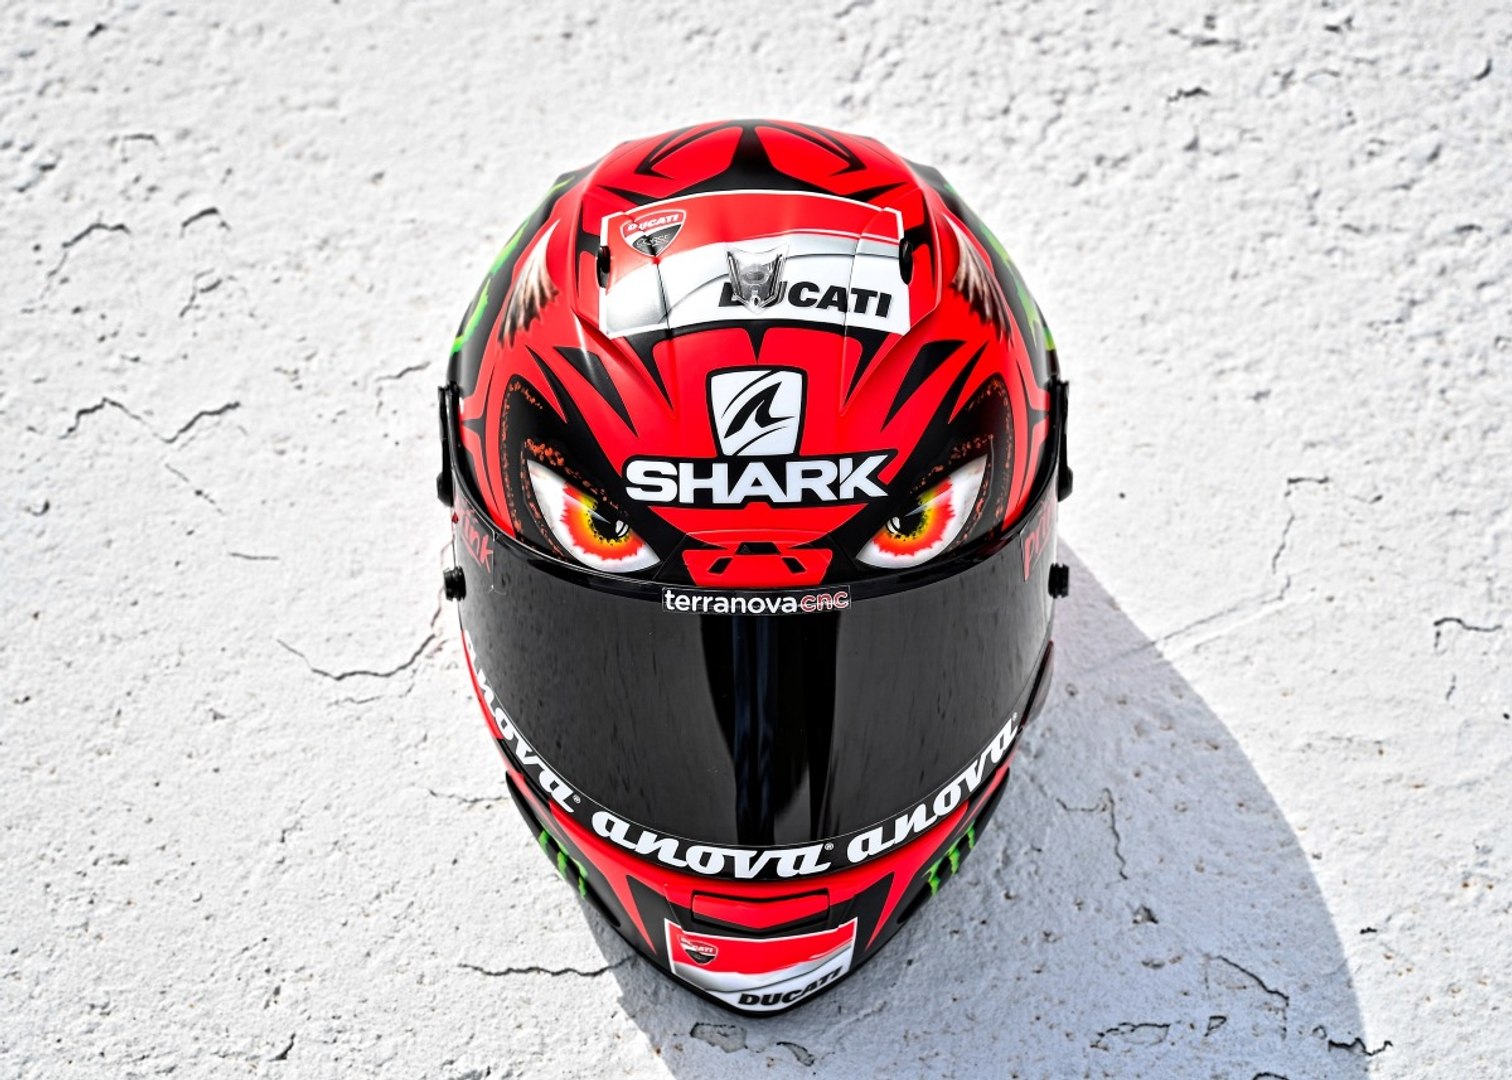 VÍDEO: Jorge Lorenzo presenta DIABLO, su decoración en el casco para el GP  de Austria de MotoGP - Vídeo Dailymotion